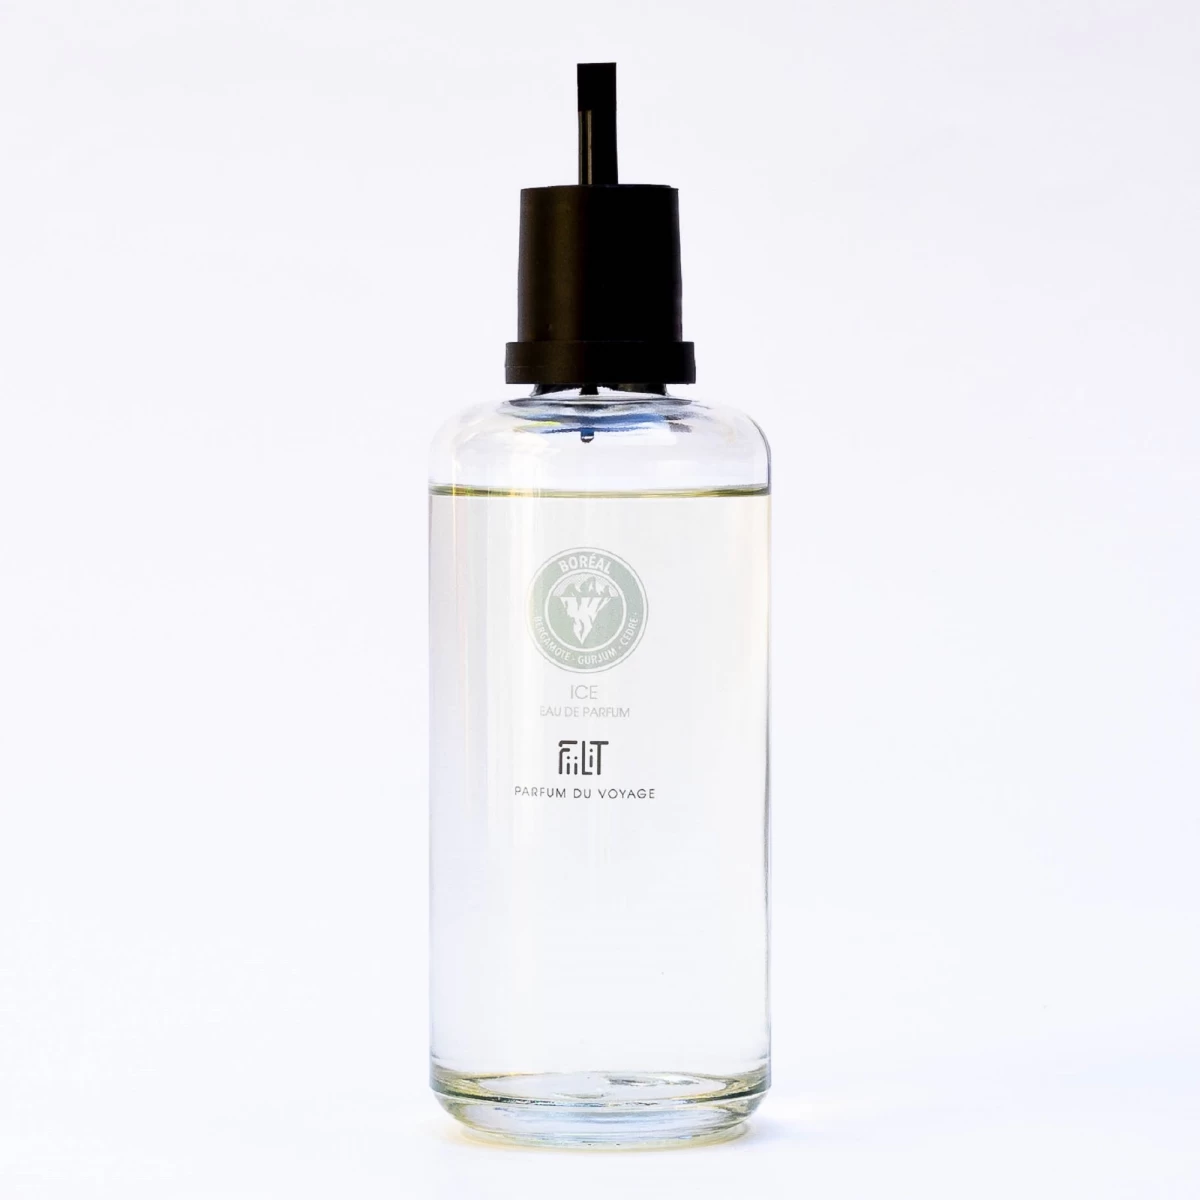 detailed_14_eau-de-parfum-ice-boreal-200ml-refill-fiilit-parfum-du-voyage-2.webp